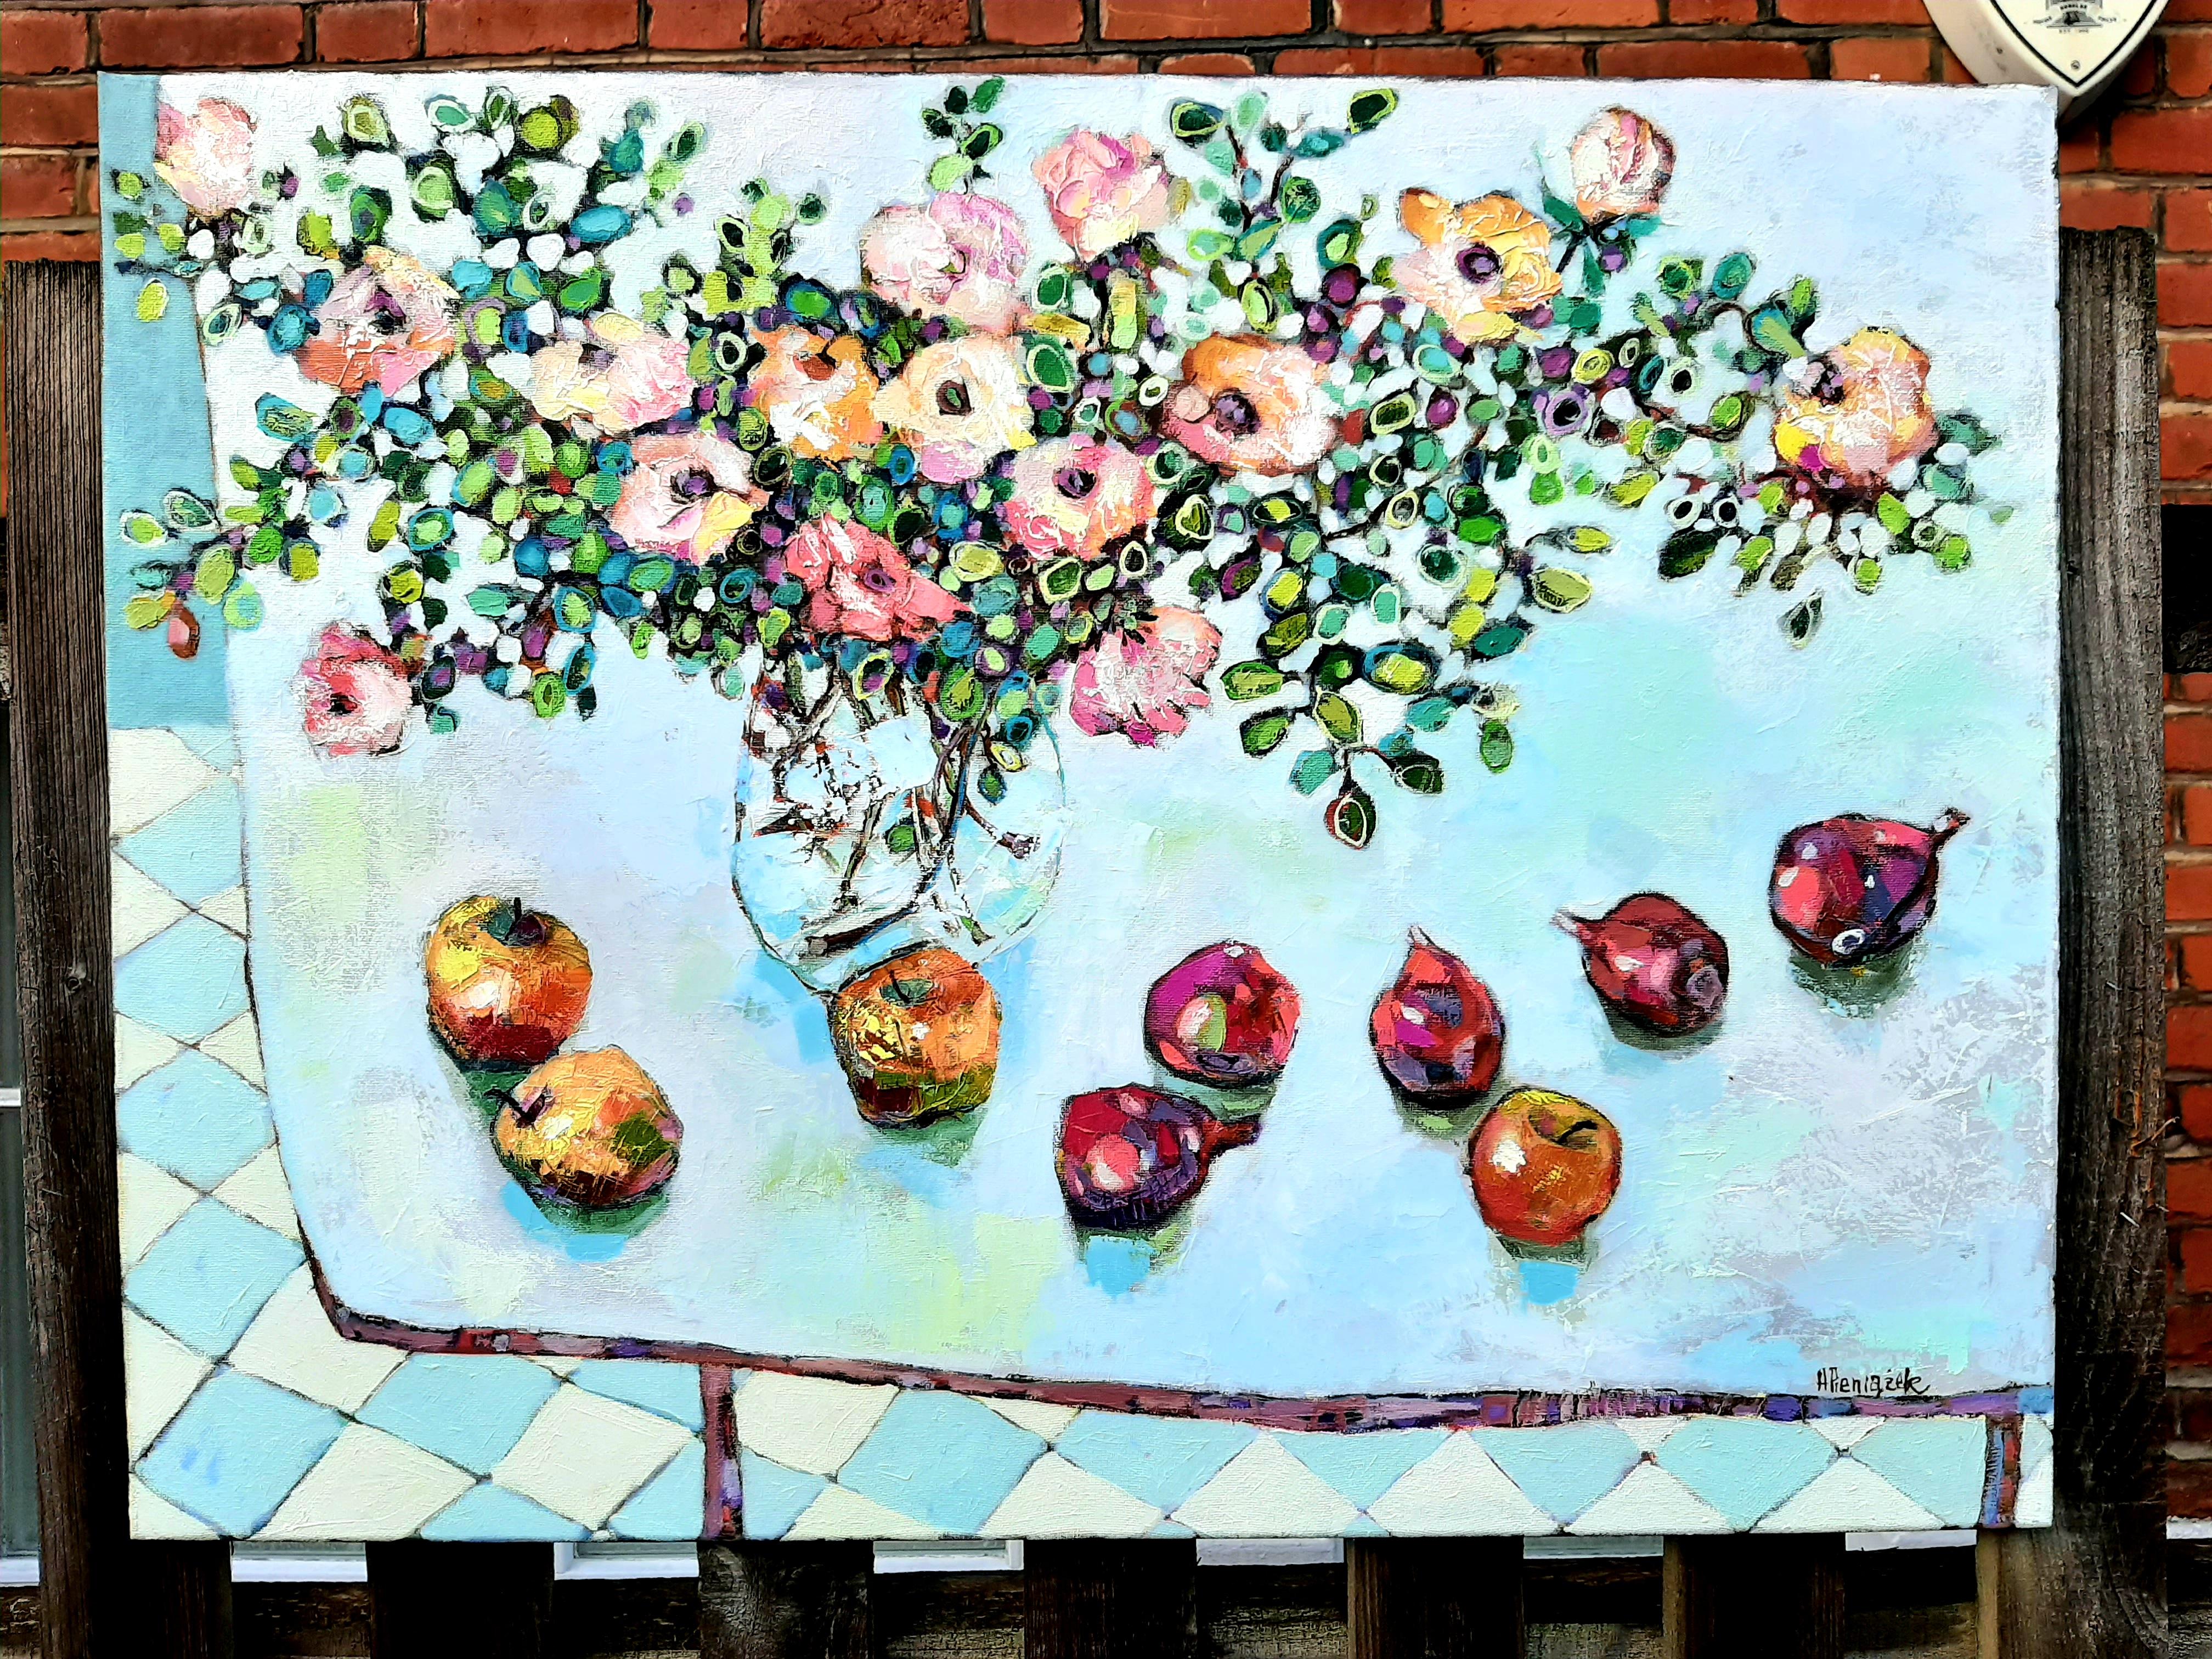 Fleurs, fruits et légumes -nature morte contemporaine peinture à l'huile sur table colorée - Contemporain Painting par Ania Pieniazek